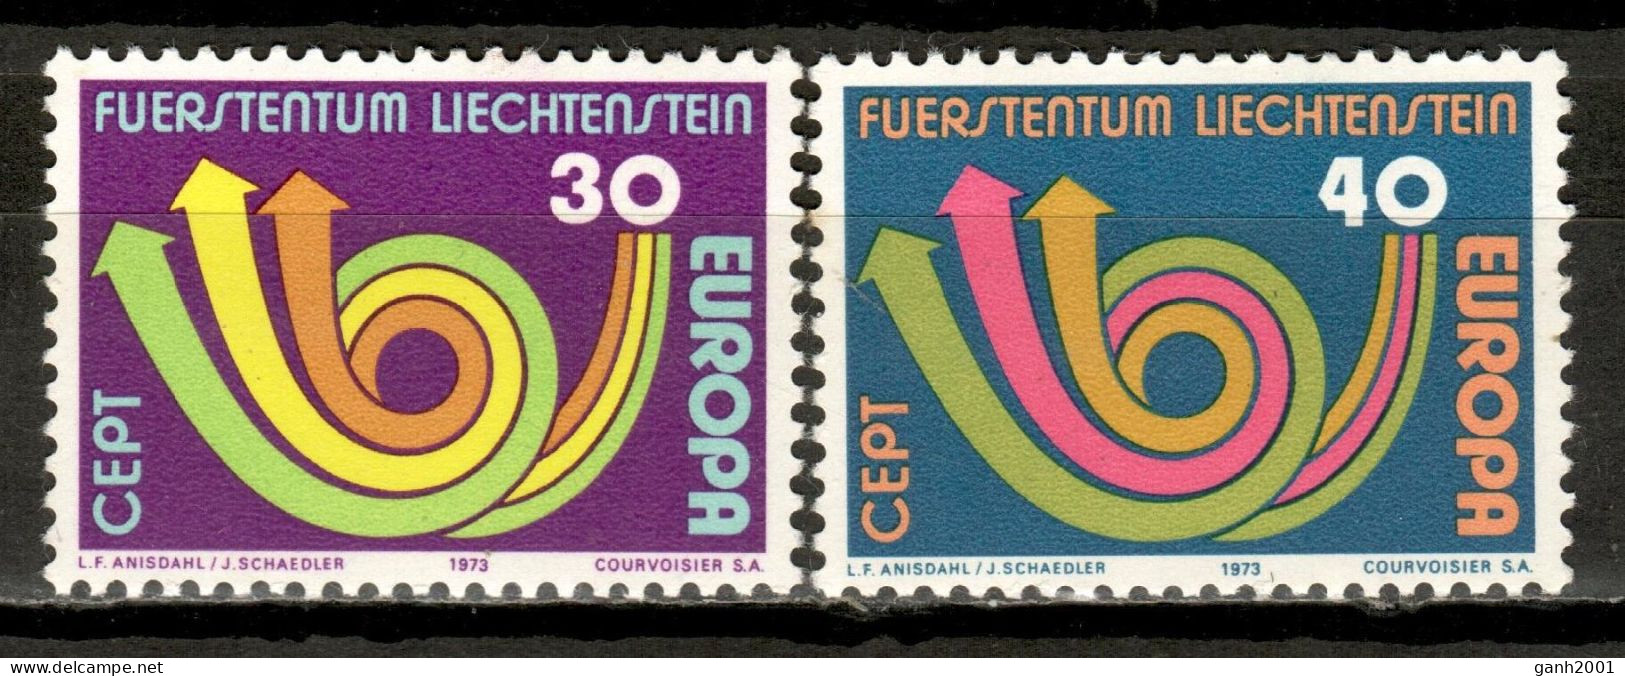 Liechtenstein 1973 / Europa CEPT MNH / Kw38  18-34 - 1973